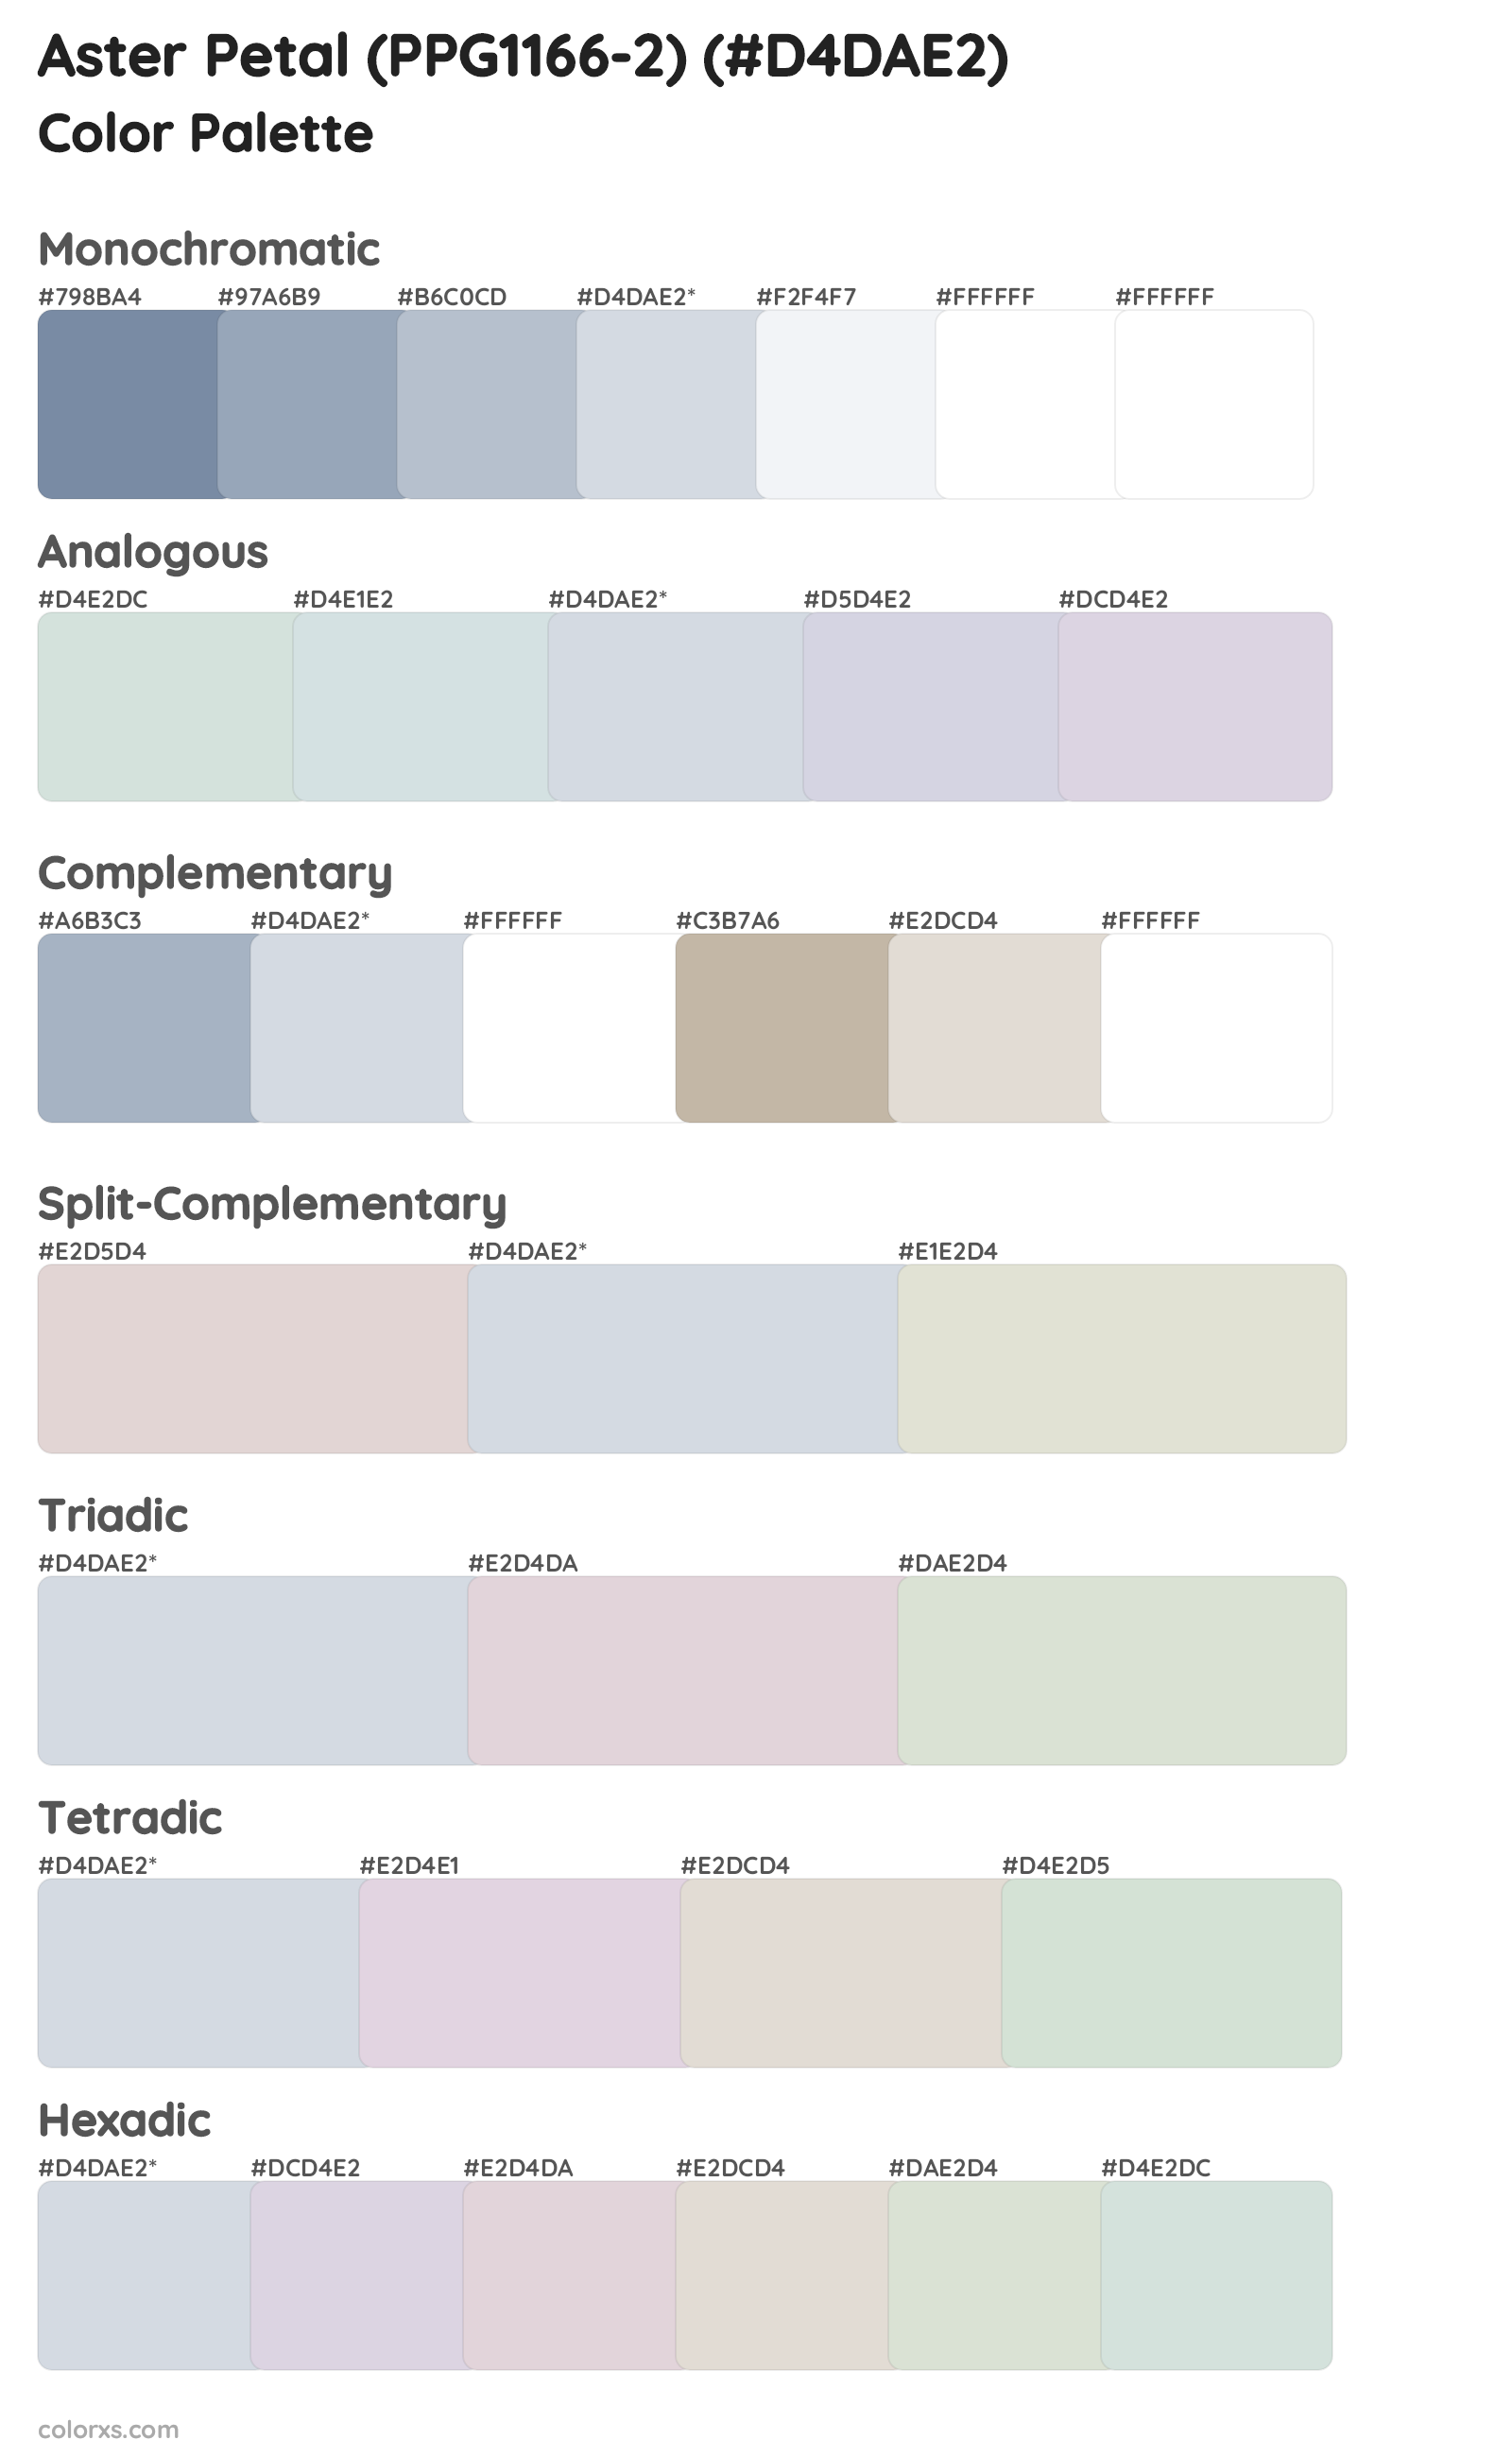 Aster Petal (PPG1166-2) Color Scheme Palettes